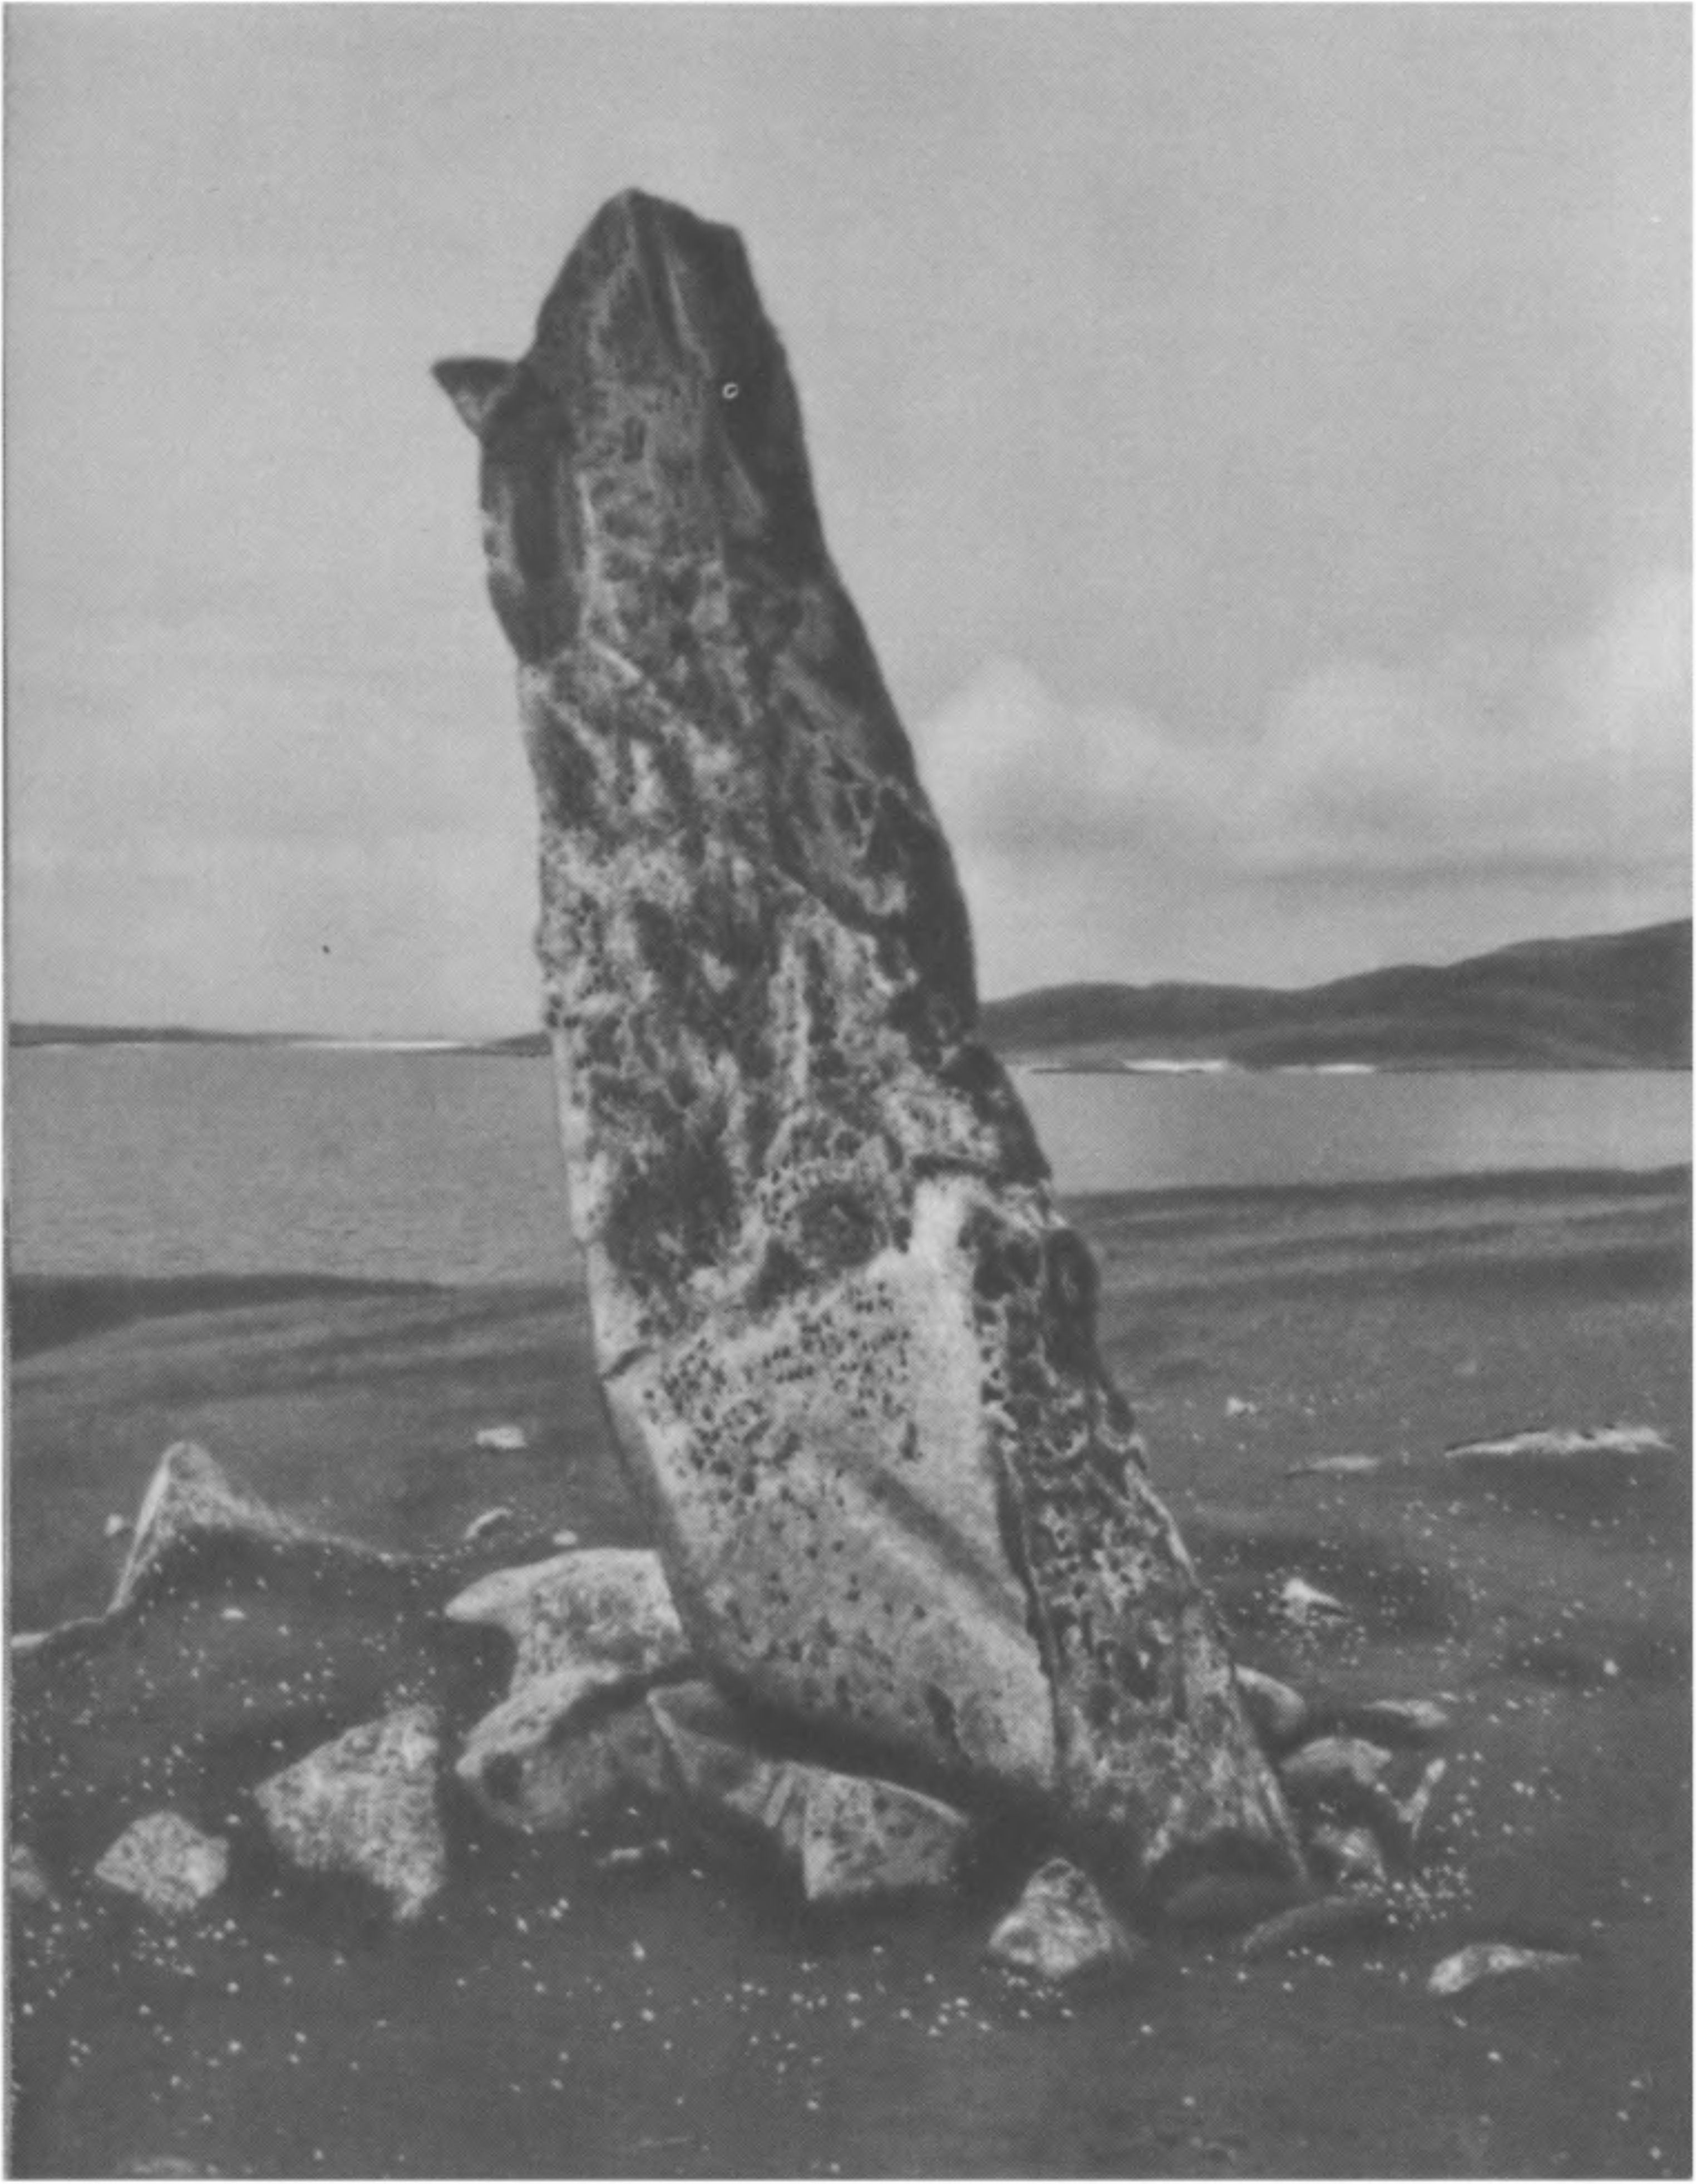 XII. Стоячий камень Клах-Мик-Леойд. Этот камень вместе с островом Боререй образует створ, который указывает точку захода Солнца во время равноденствий